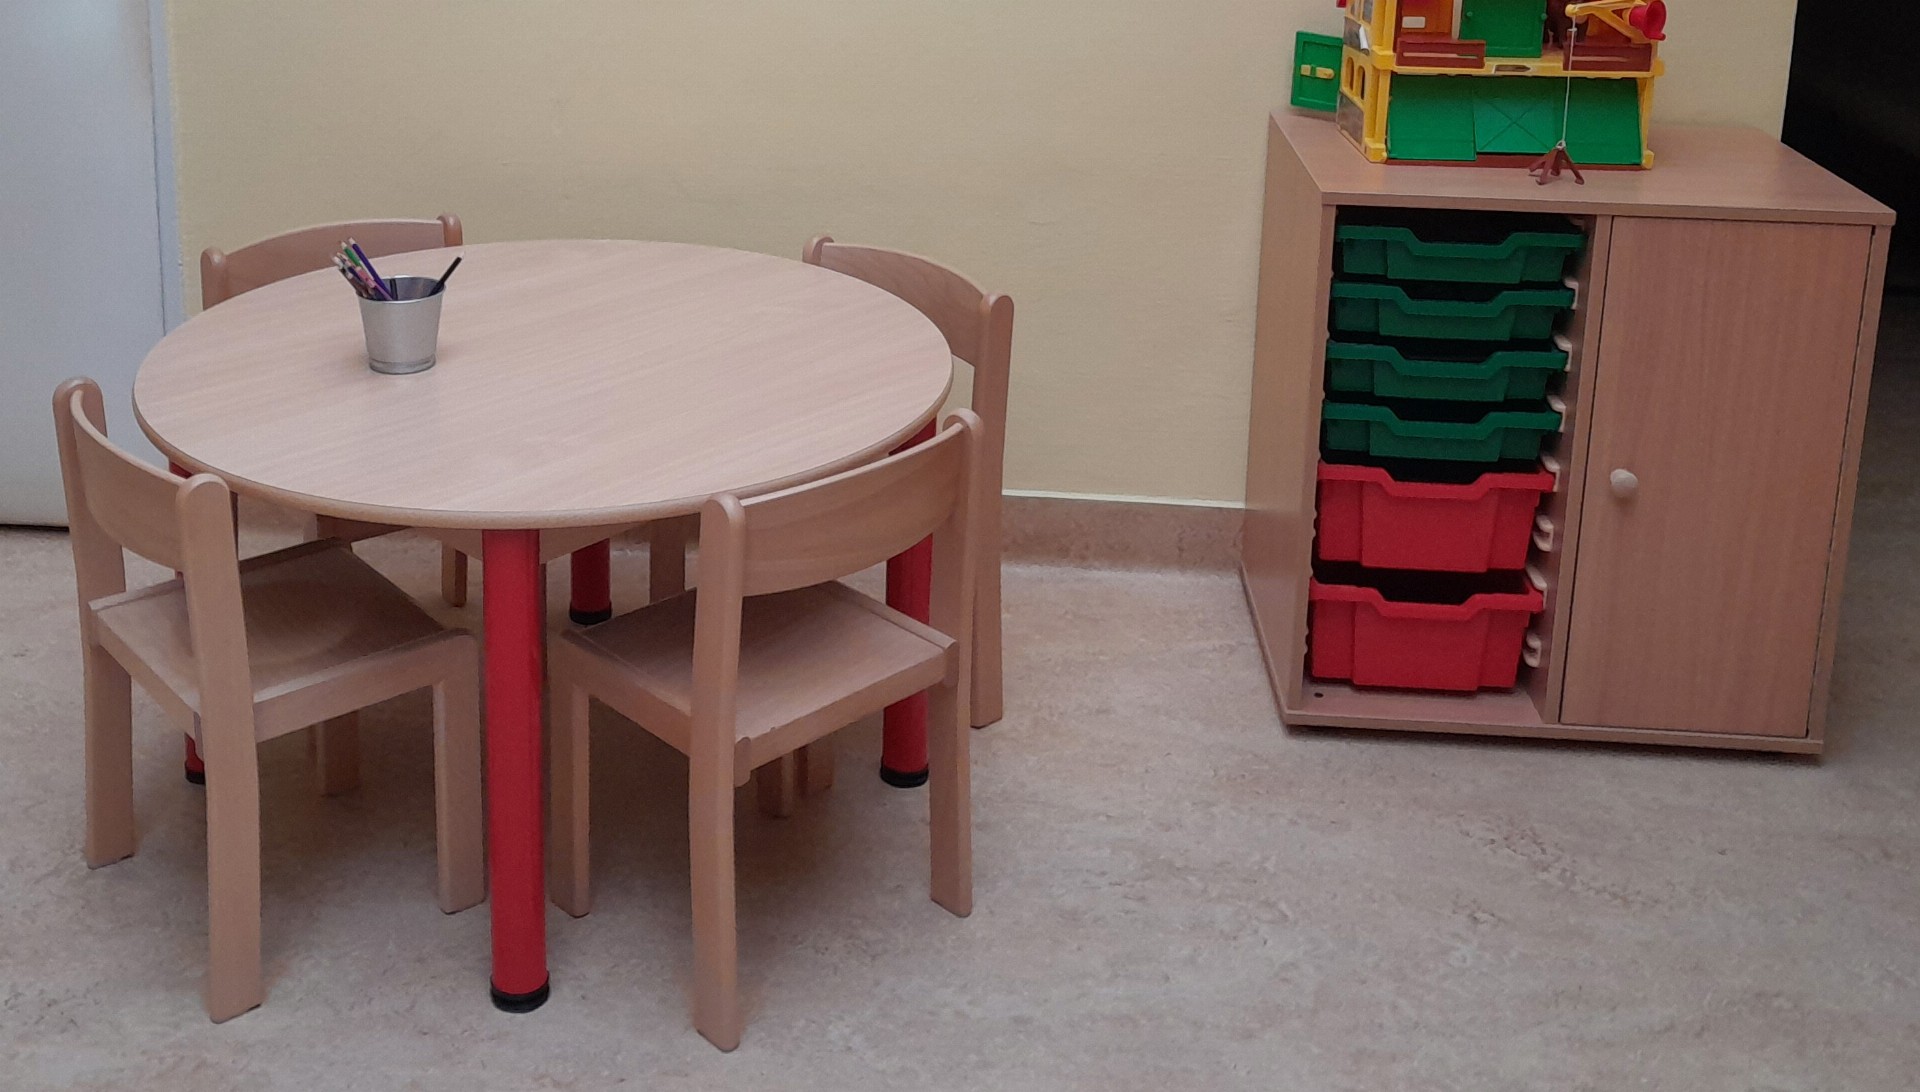 Čekárna dětské ambulance má nový nábytek